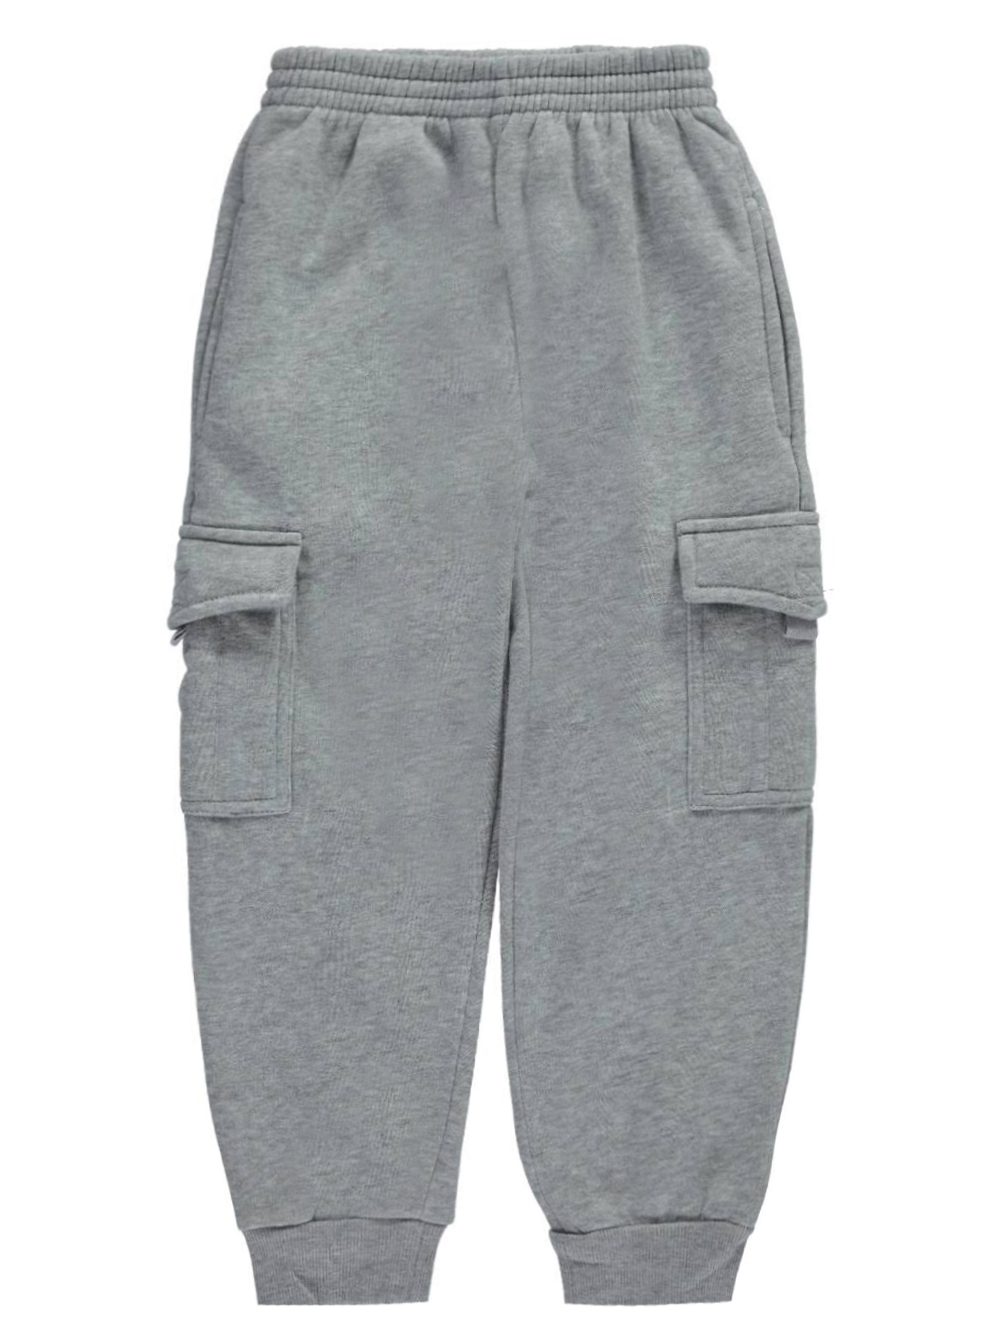 Medium Gray Sweatpants